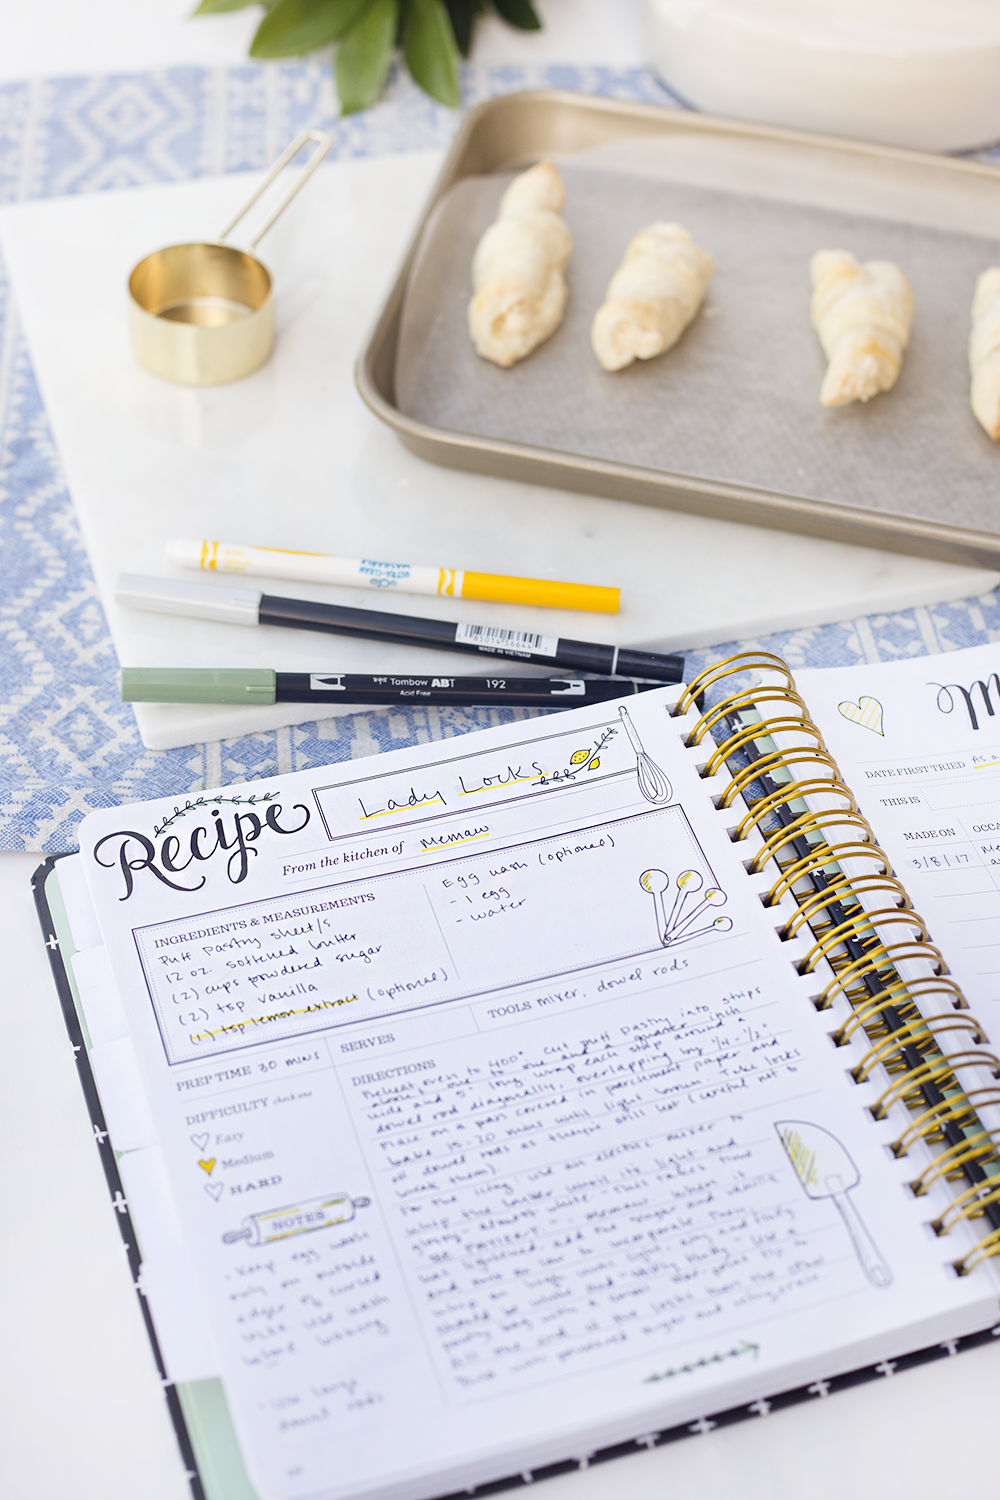 Keepsake Kitchen Diary | Recipe Book | Memory Keeping